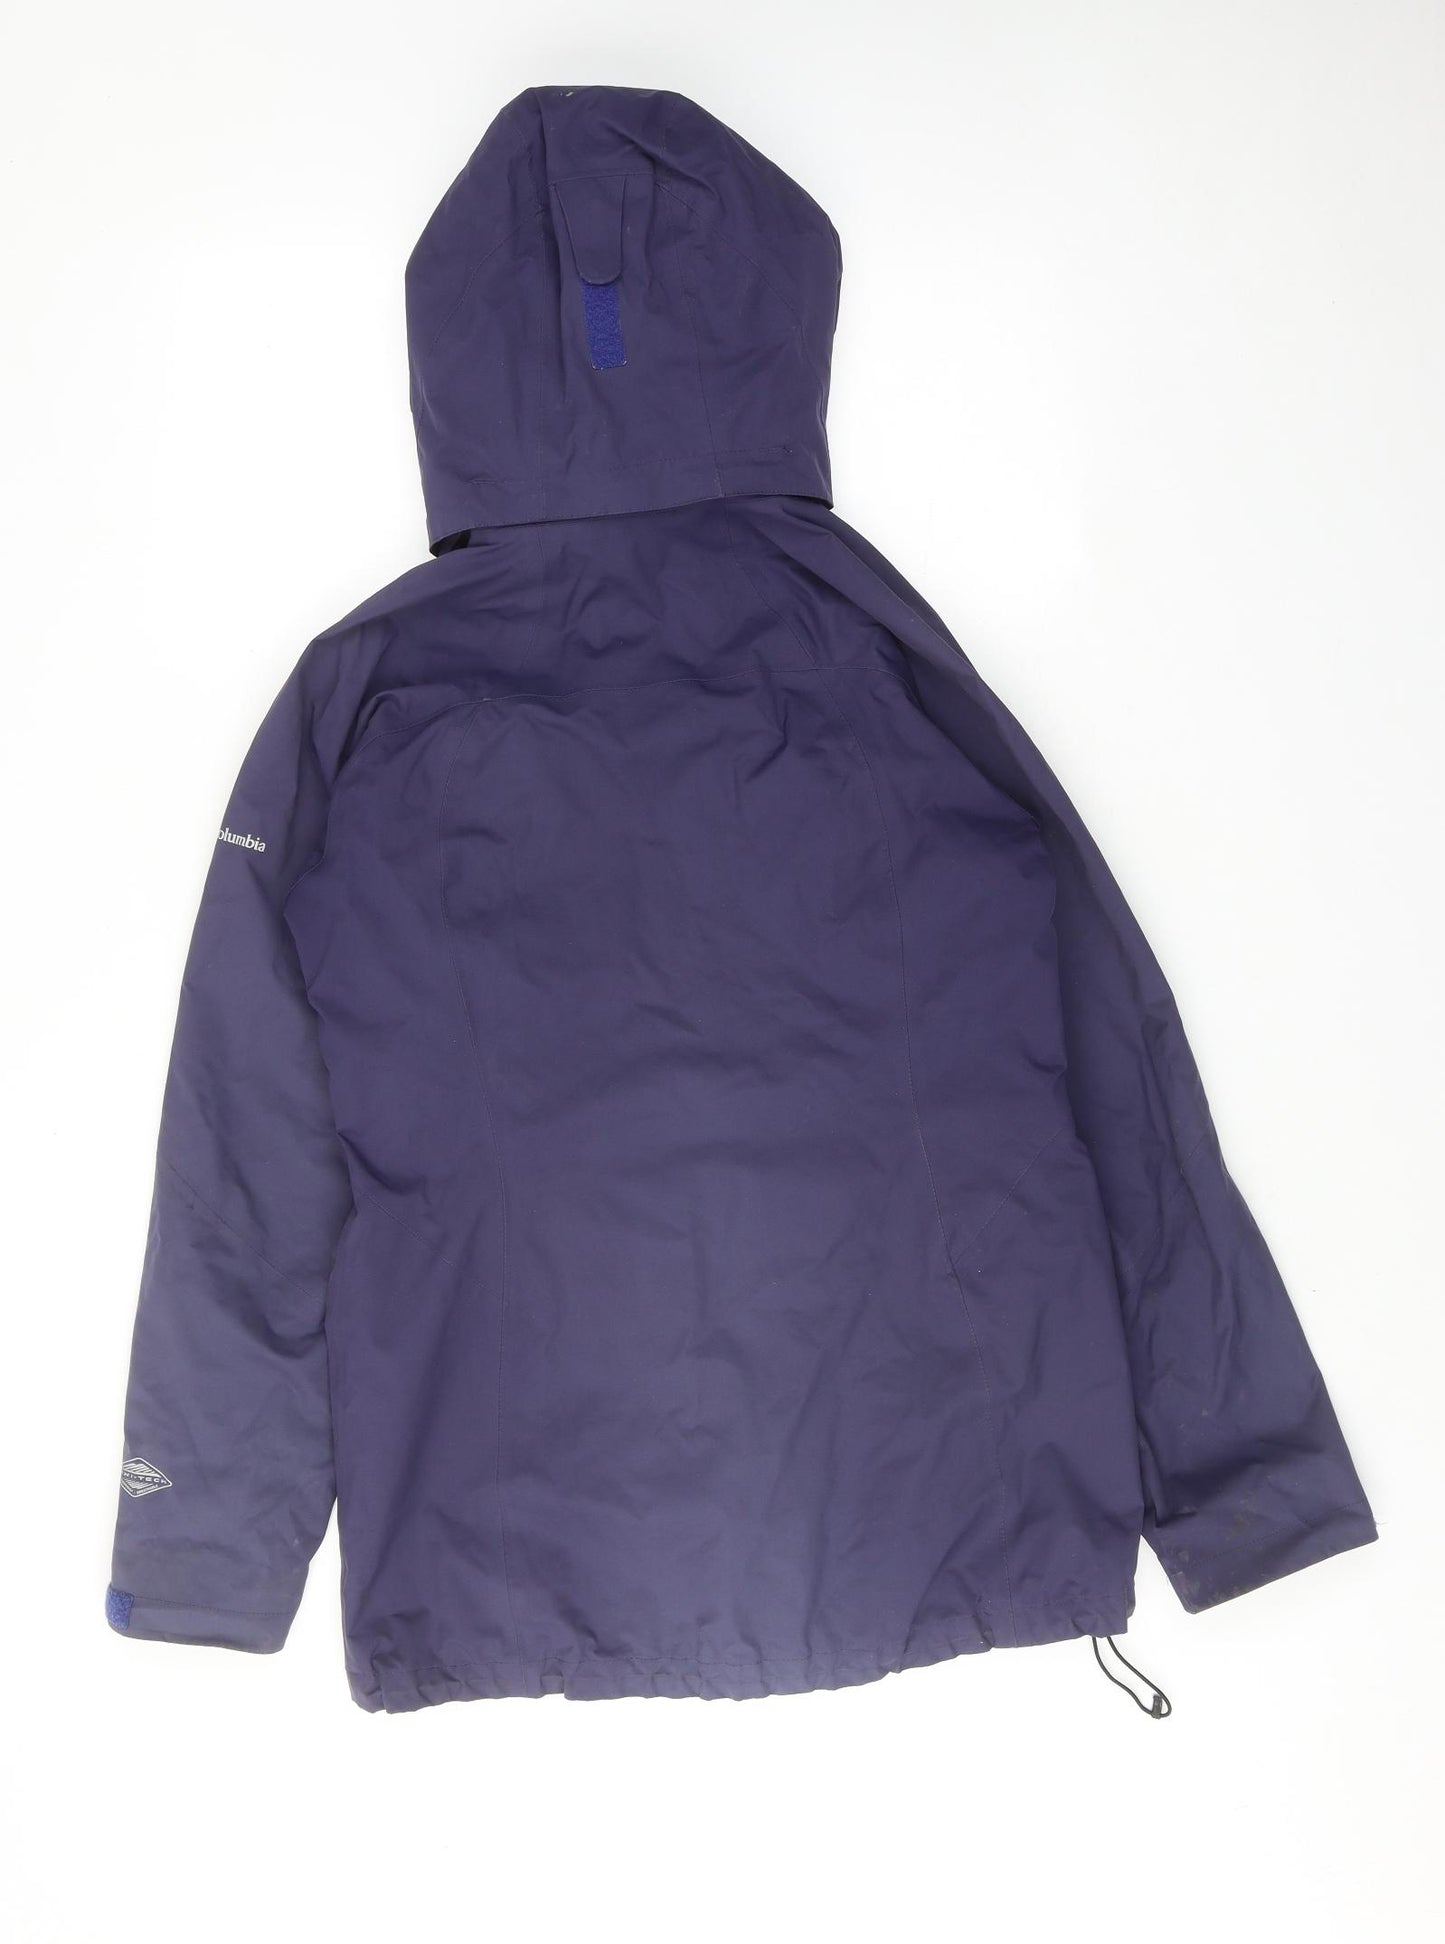 Columbia Womens Purple Windbreaker Jacket Size S Zip